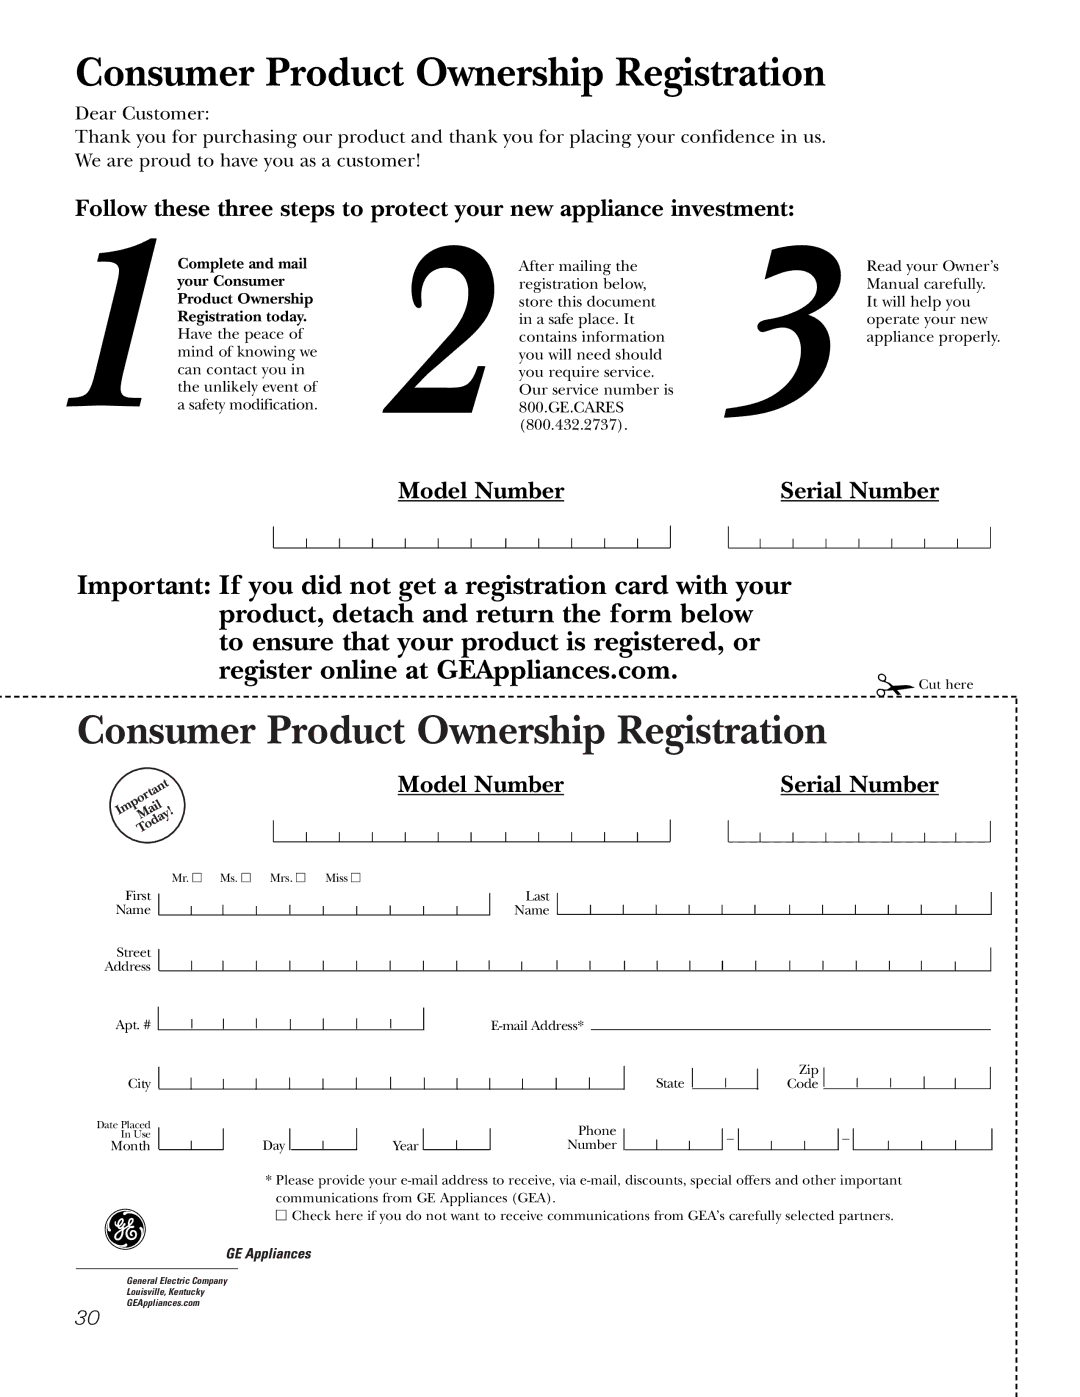 GE JSP34, JSP26 owner manual Consumer Product Ownership Registration 